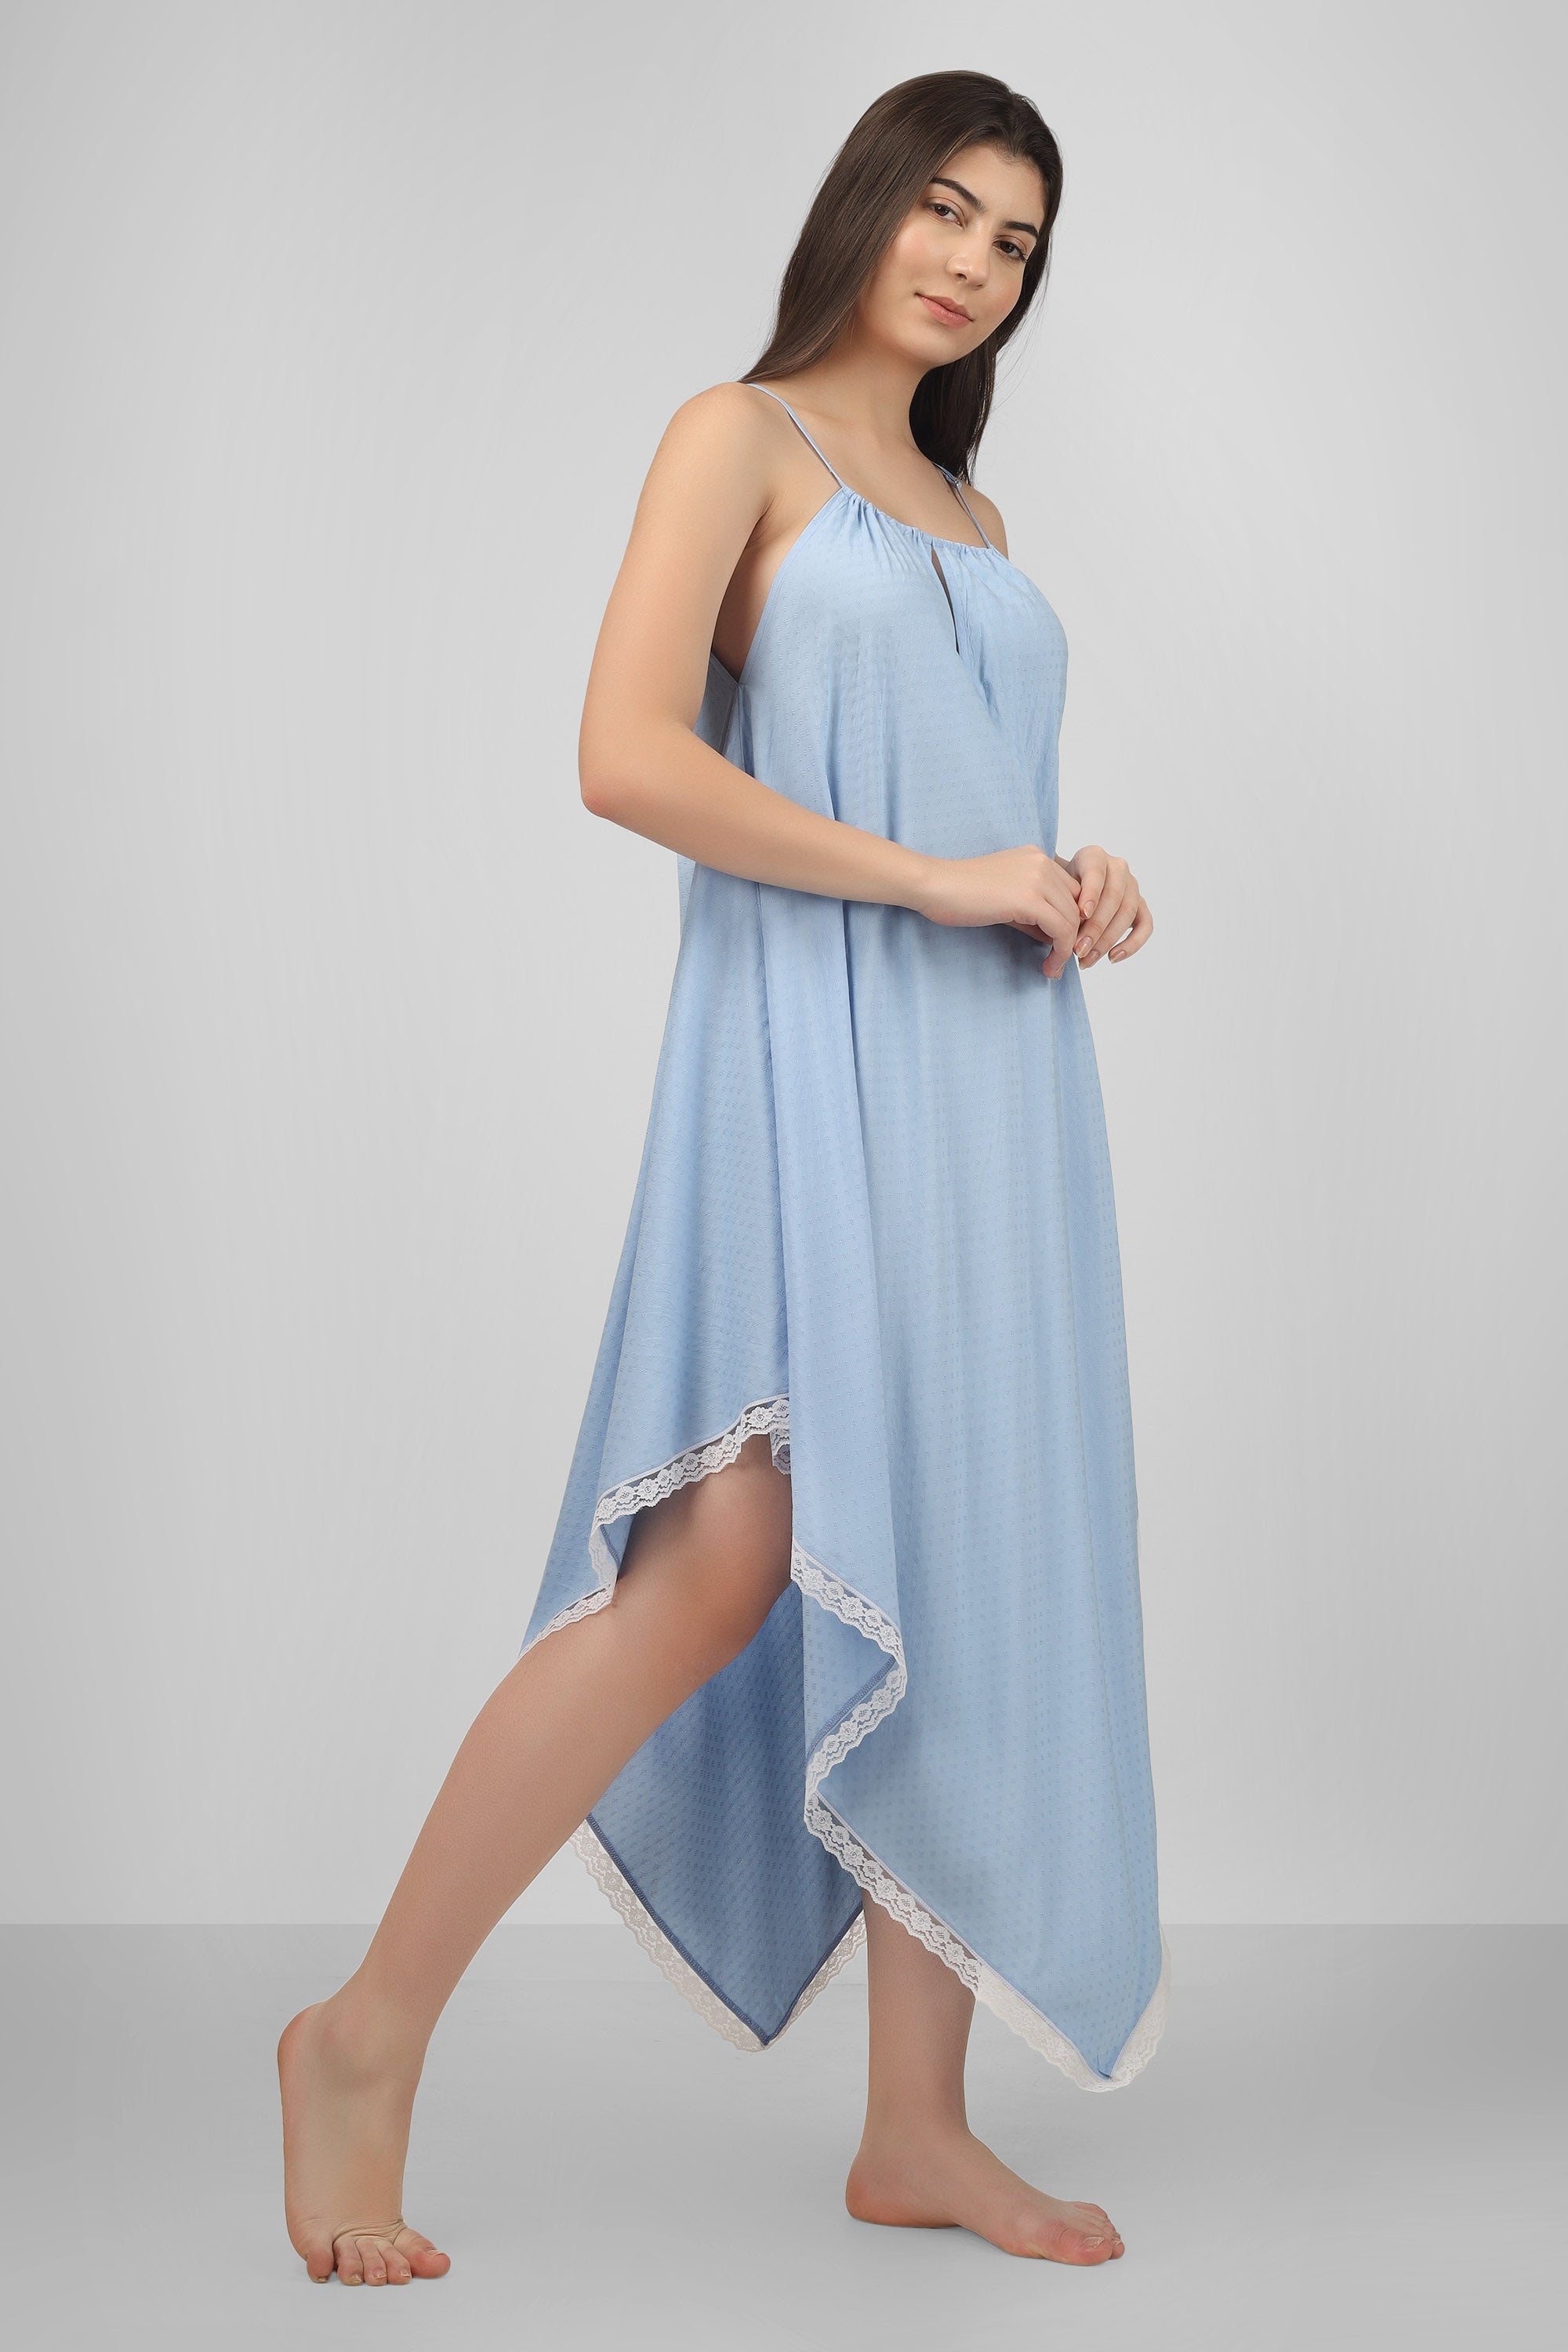 Amazon.com: STJDM Nightgown,Women Sleepwear Nightwear Summer Sleeping Dress  Large Size Women Night Dress Ladies Home : Clothing, Shoes & Jewelry